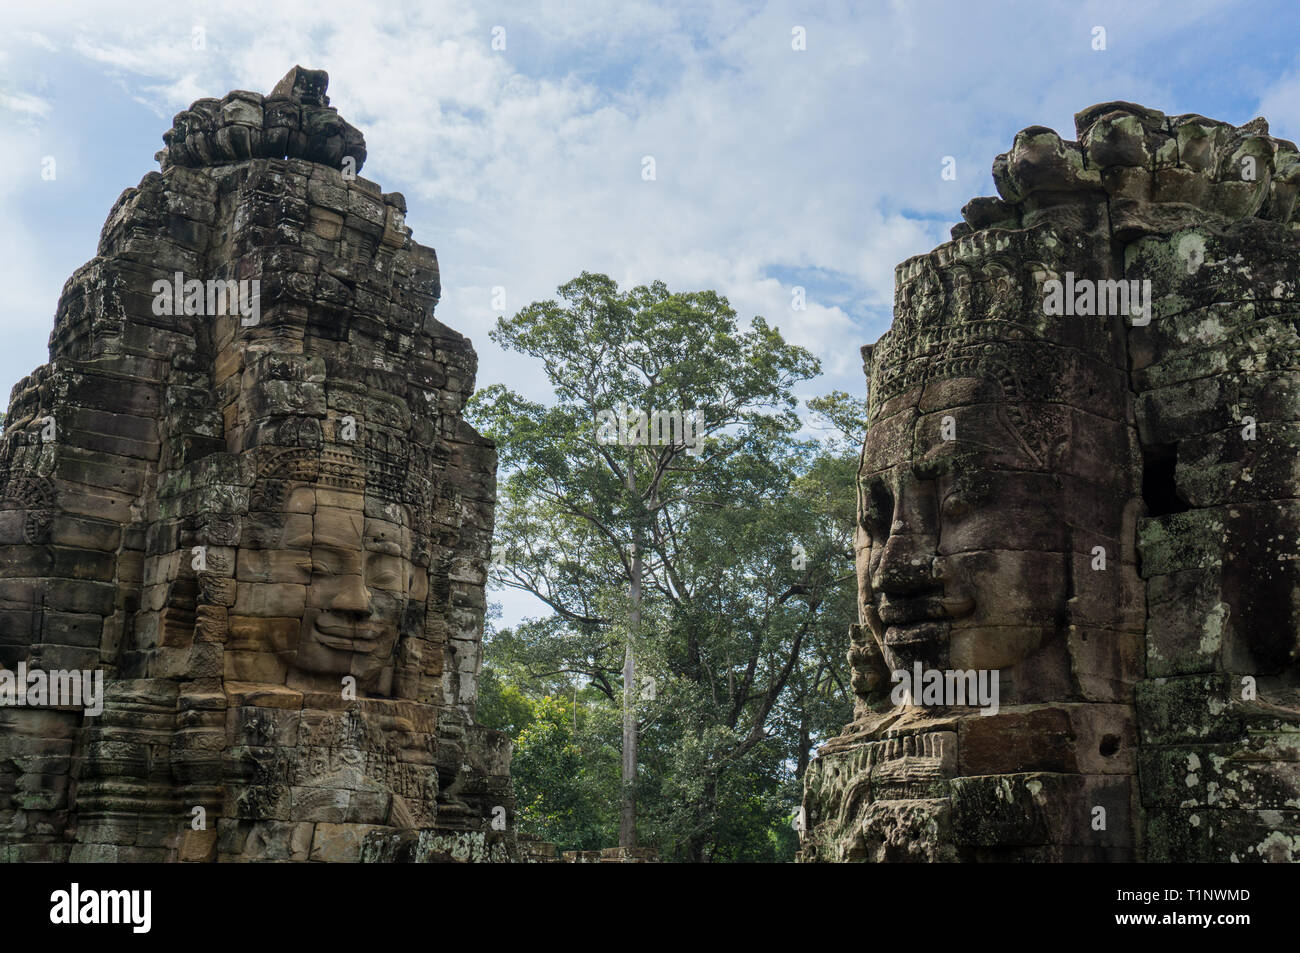 Das schöne steinerne Gesichter der alten Tempel von Bayon innerhalb des Angkor Thom Komplex in Kambodscha Stockfoto